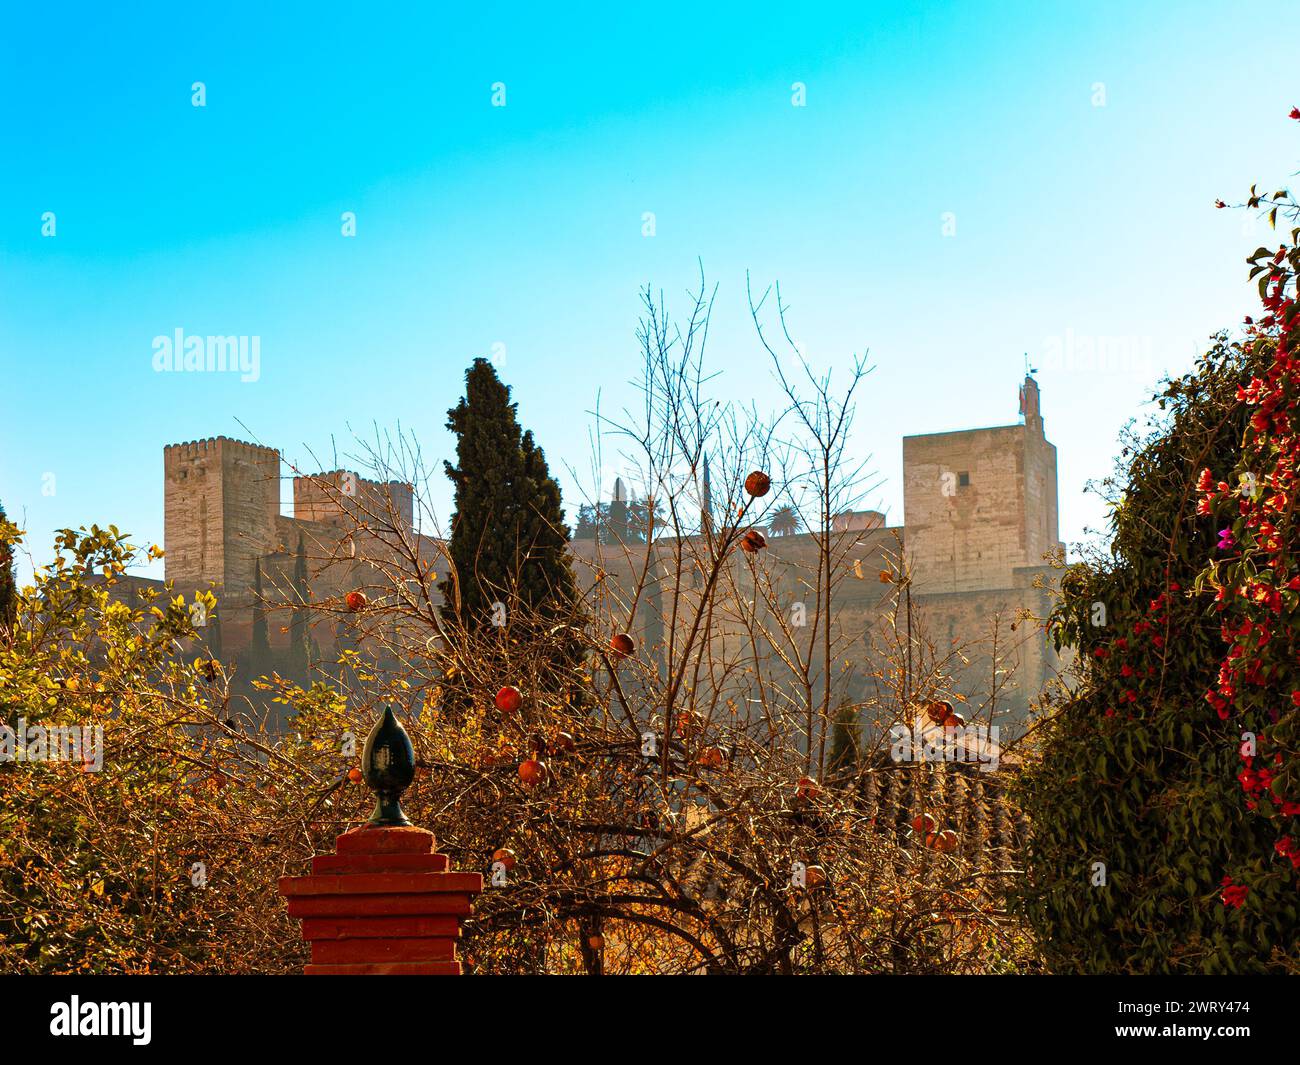 La Alhambra (Granada) and pomegranate fruit Stock Photo